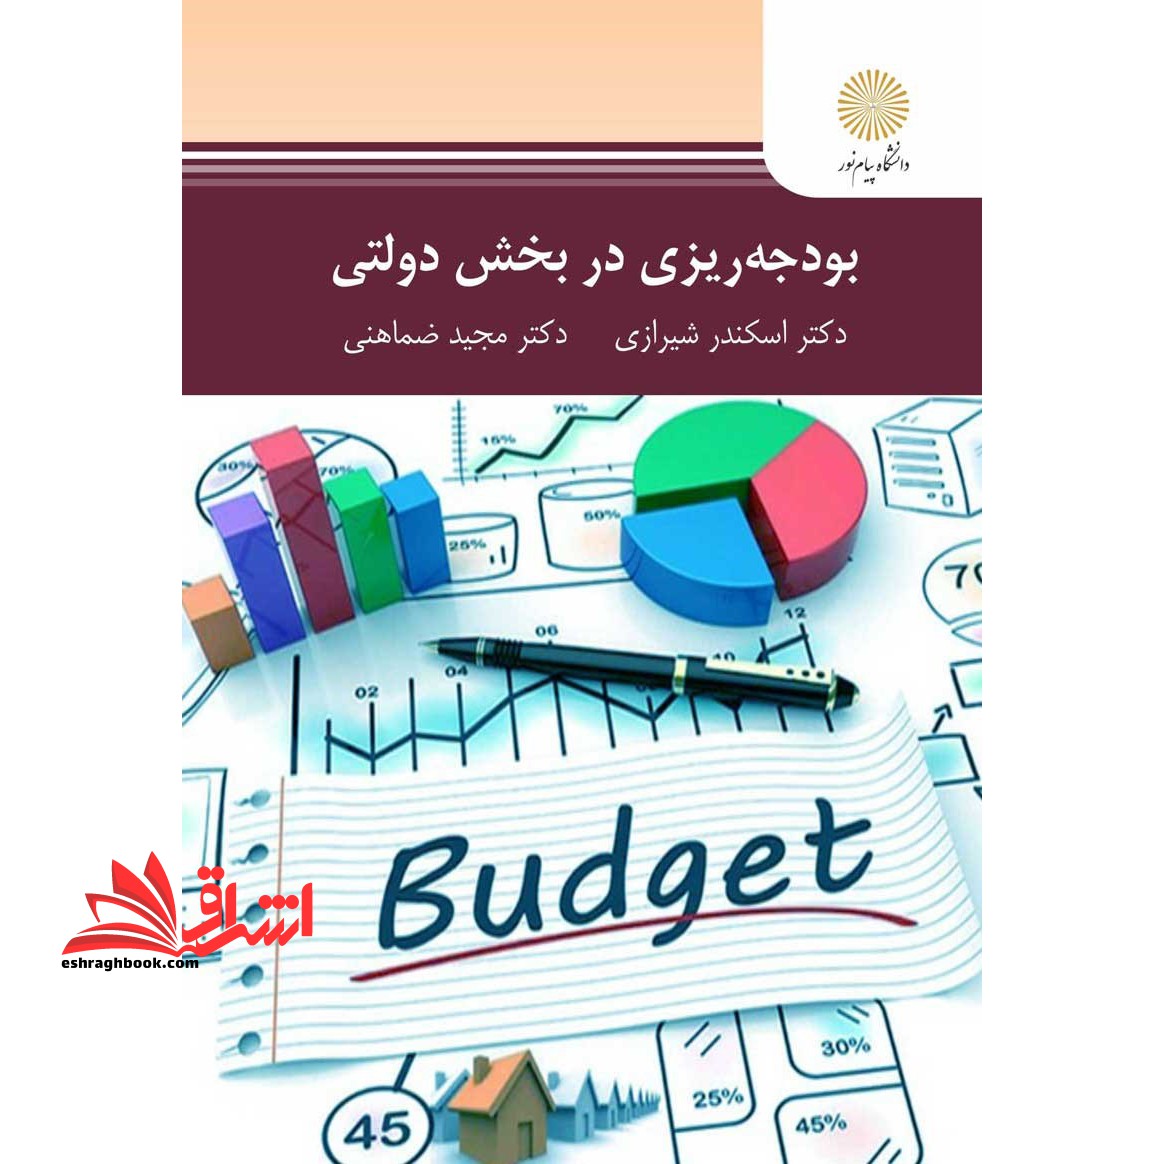 بودجه ریزی در بخش دولتی